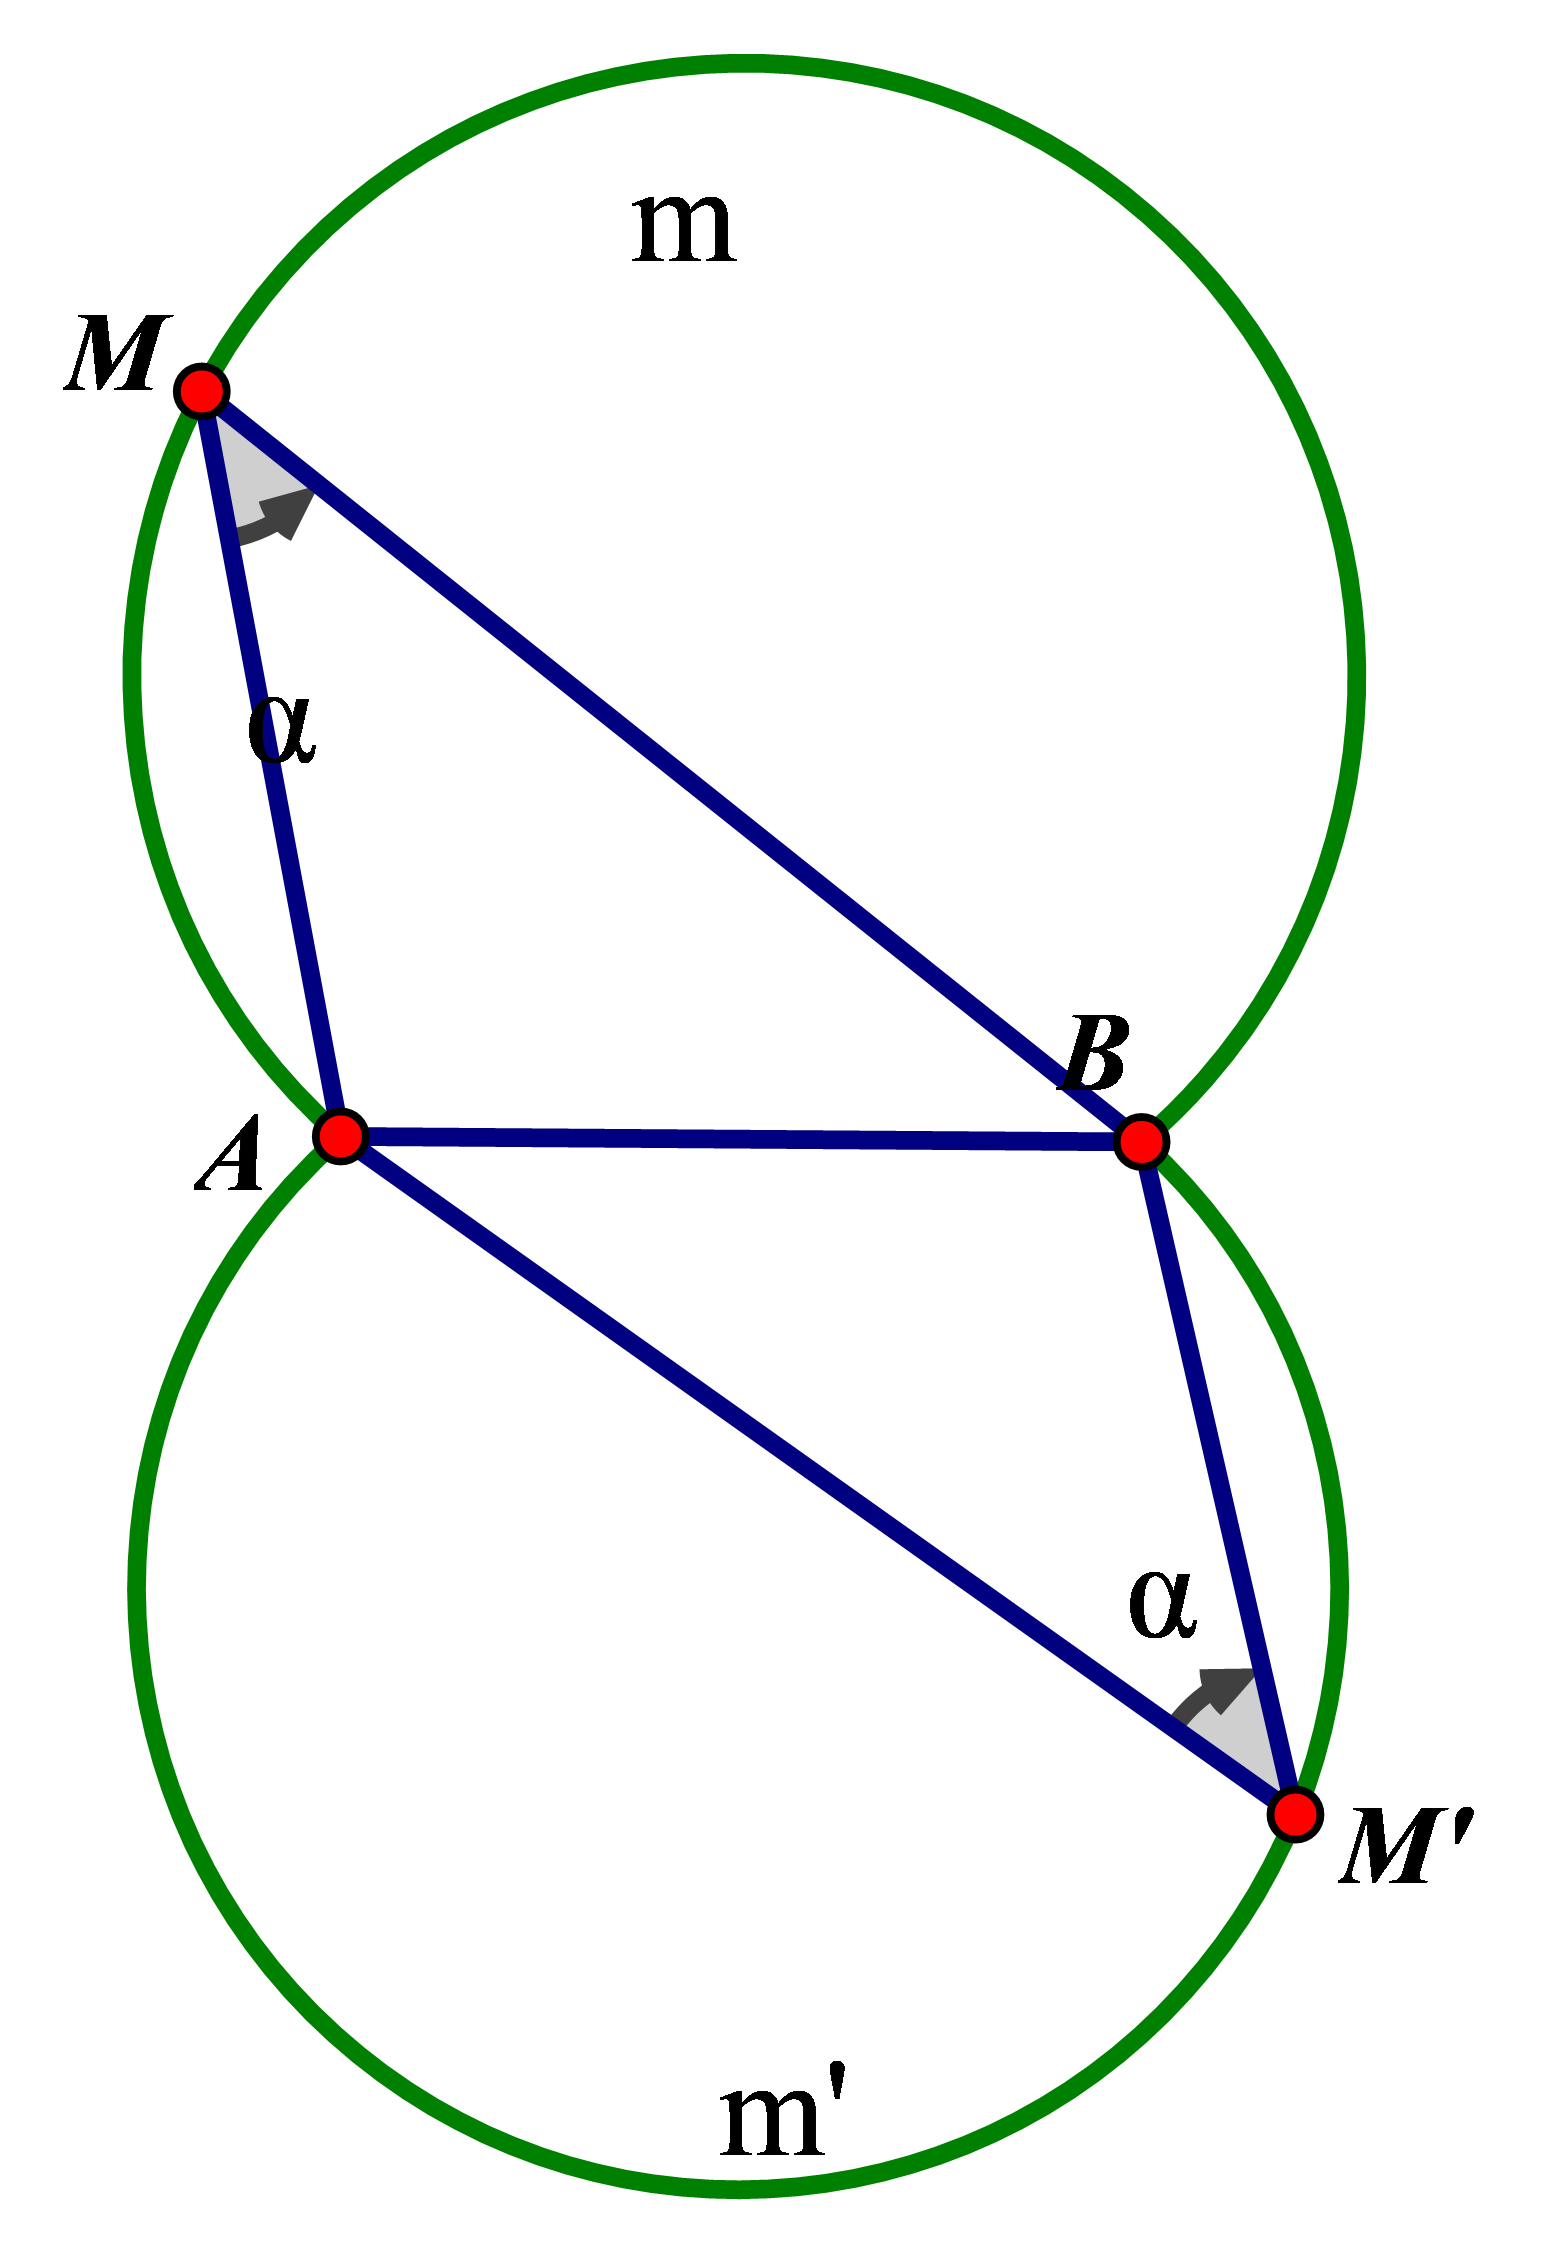 Hình minh họa Bài toán quỹ tích, cung chứa góc